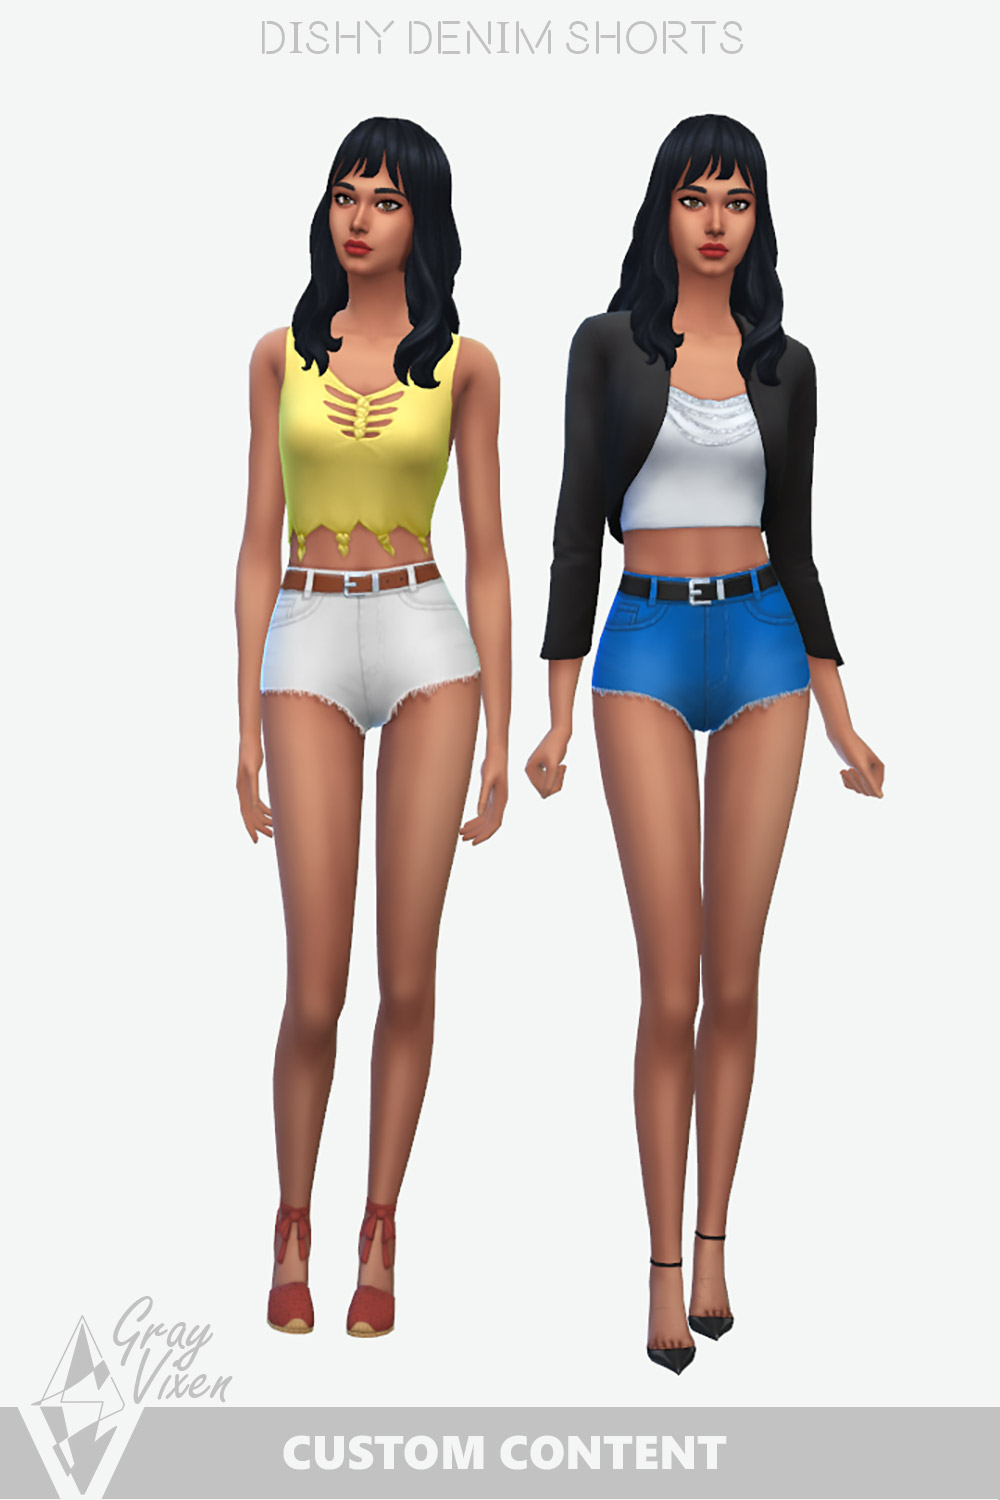 The Sims 4 Denim Shorts